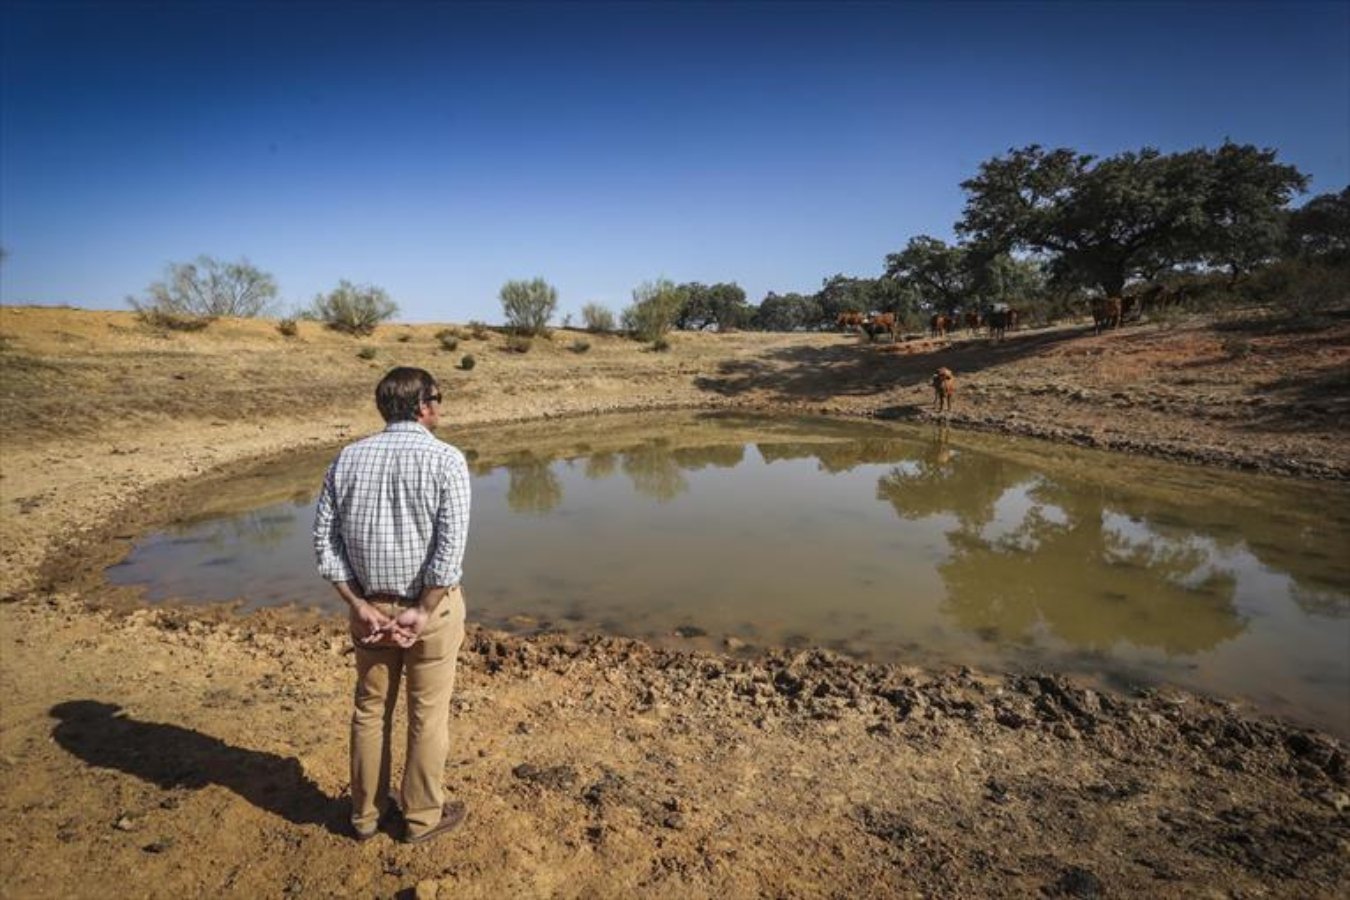 Hombre con camisa color azul y pantalon café claro, observando la sequía de agua en la naturaleza.